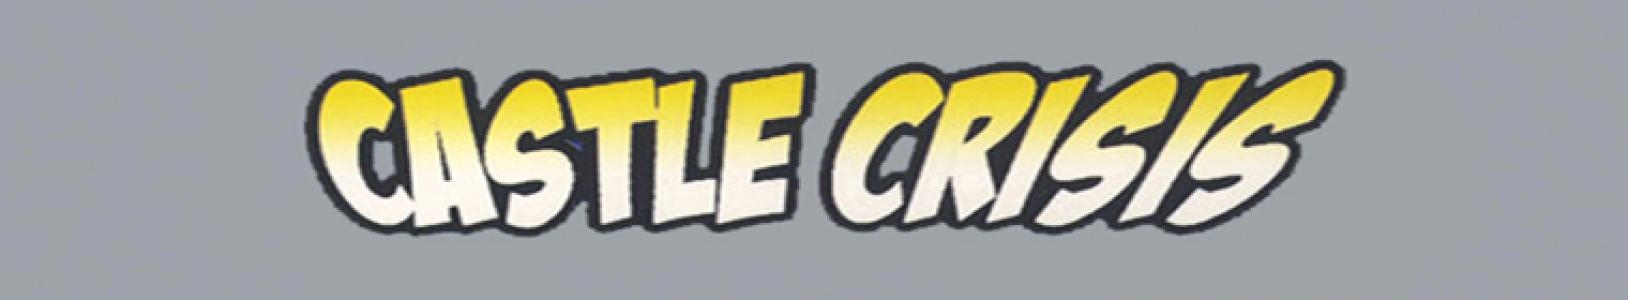 Castle Crisis banner